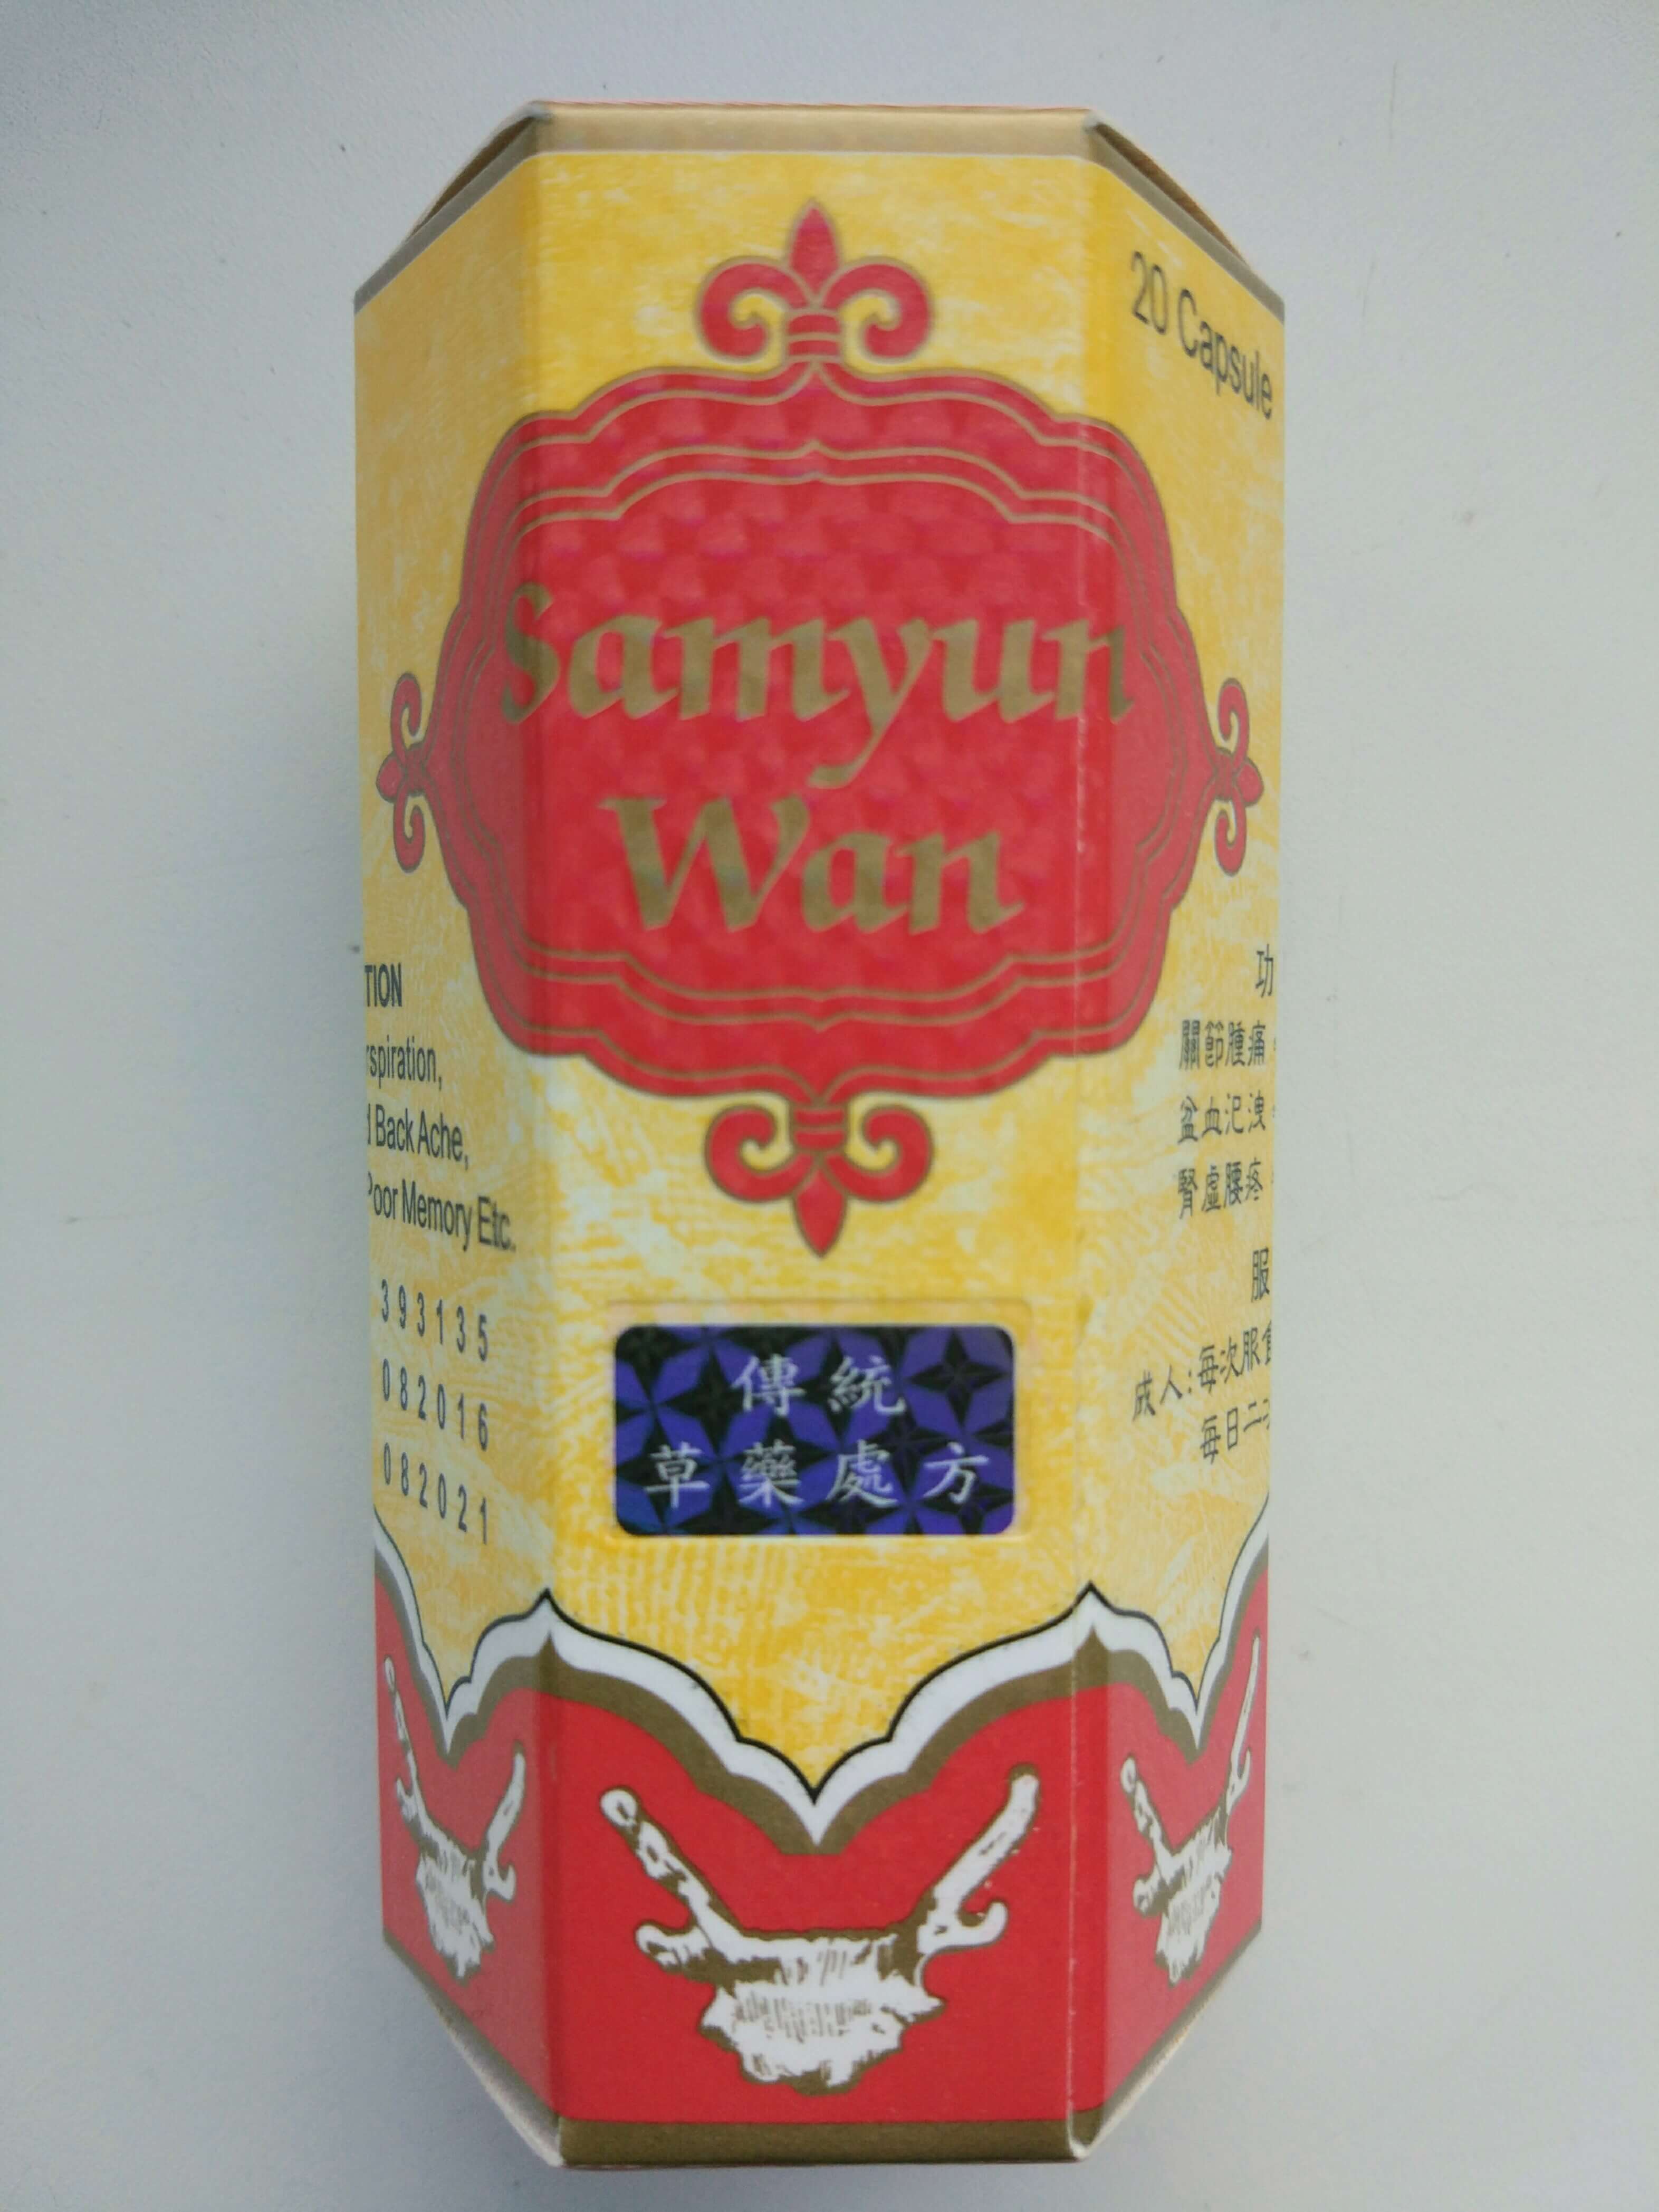 Samyun wan – есть ли польза от добавки?